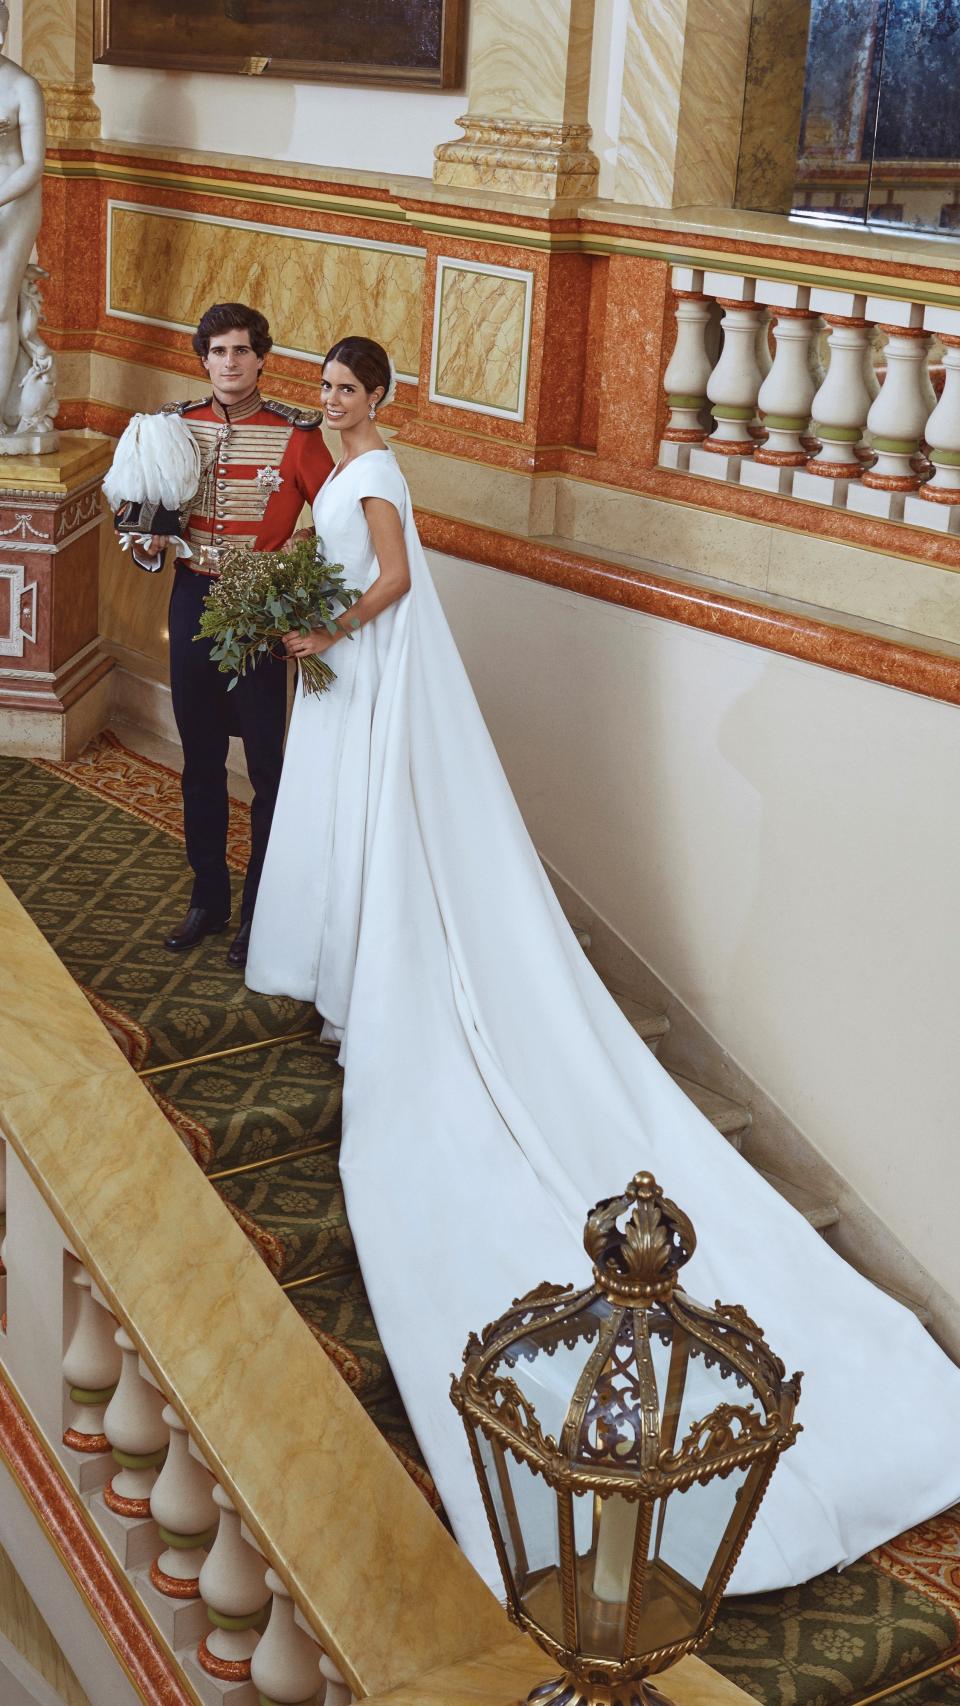 Fotografía oficial de la boda de Fernando Fitz-James Stuart y Sofía Palazuelo.